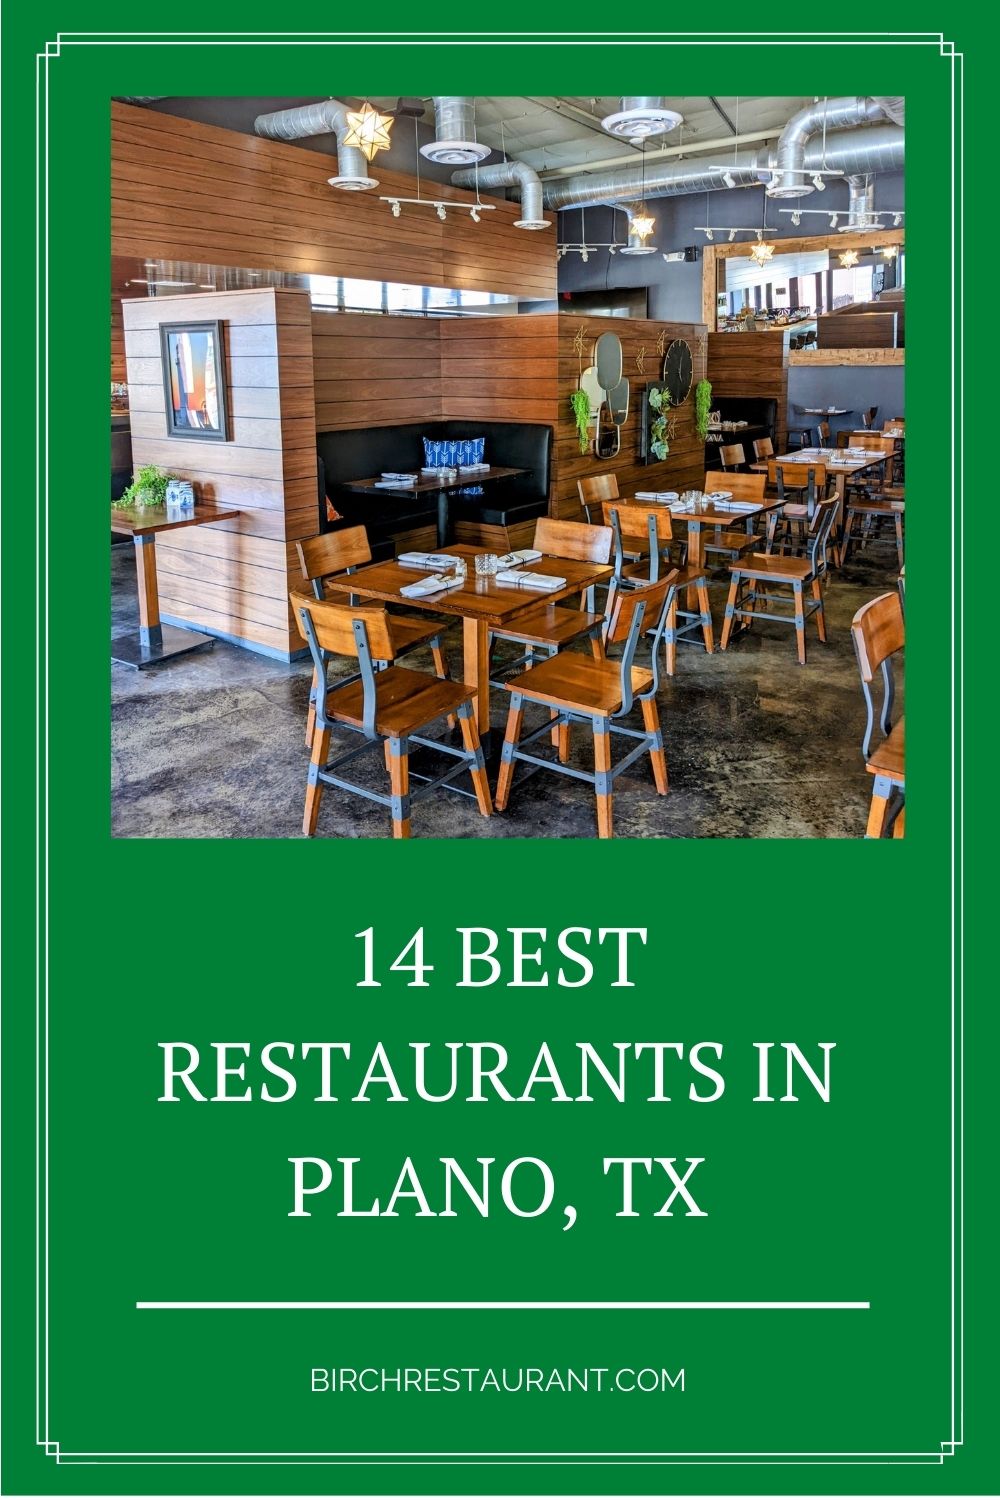 Best Restaurants in Plano